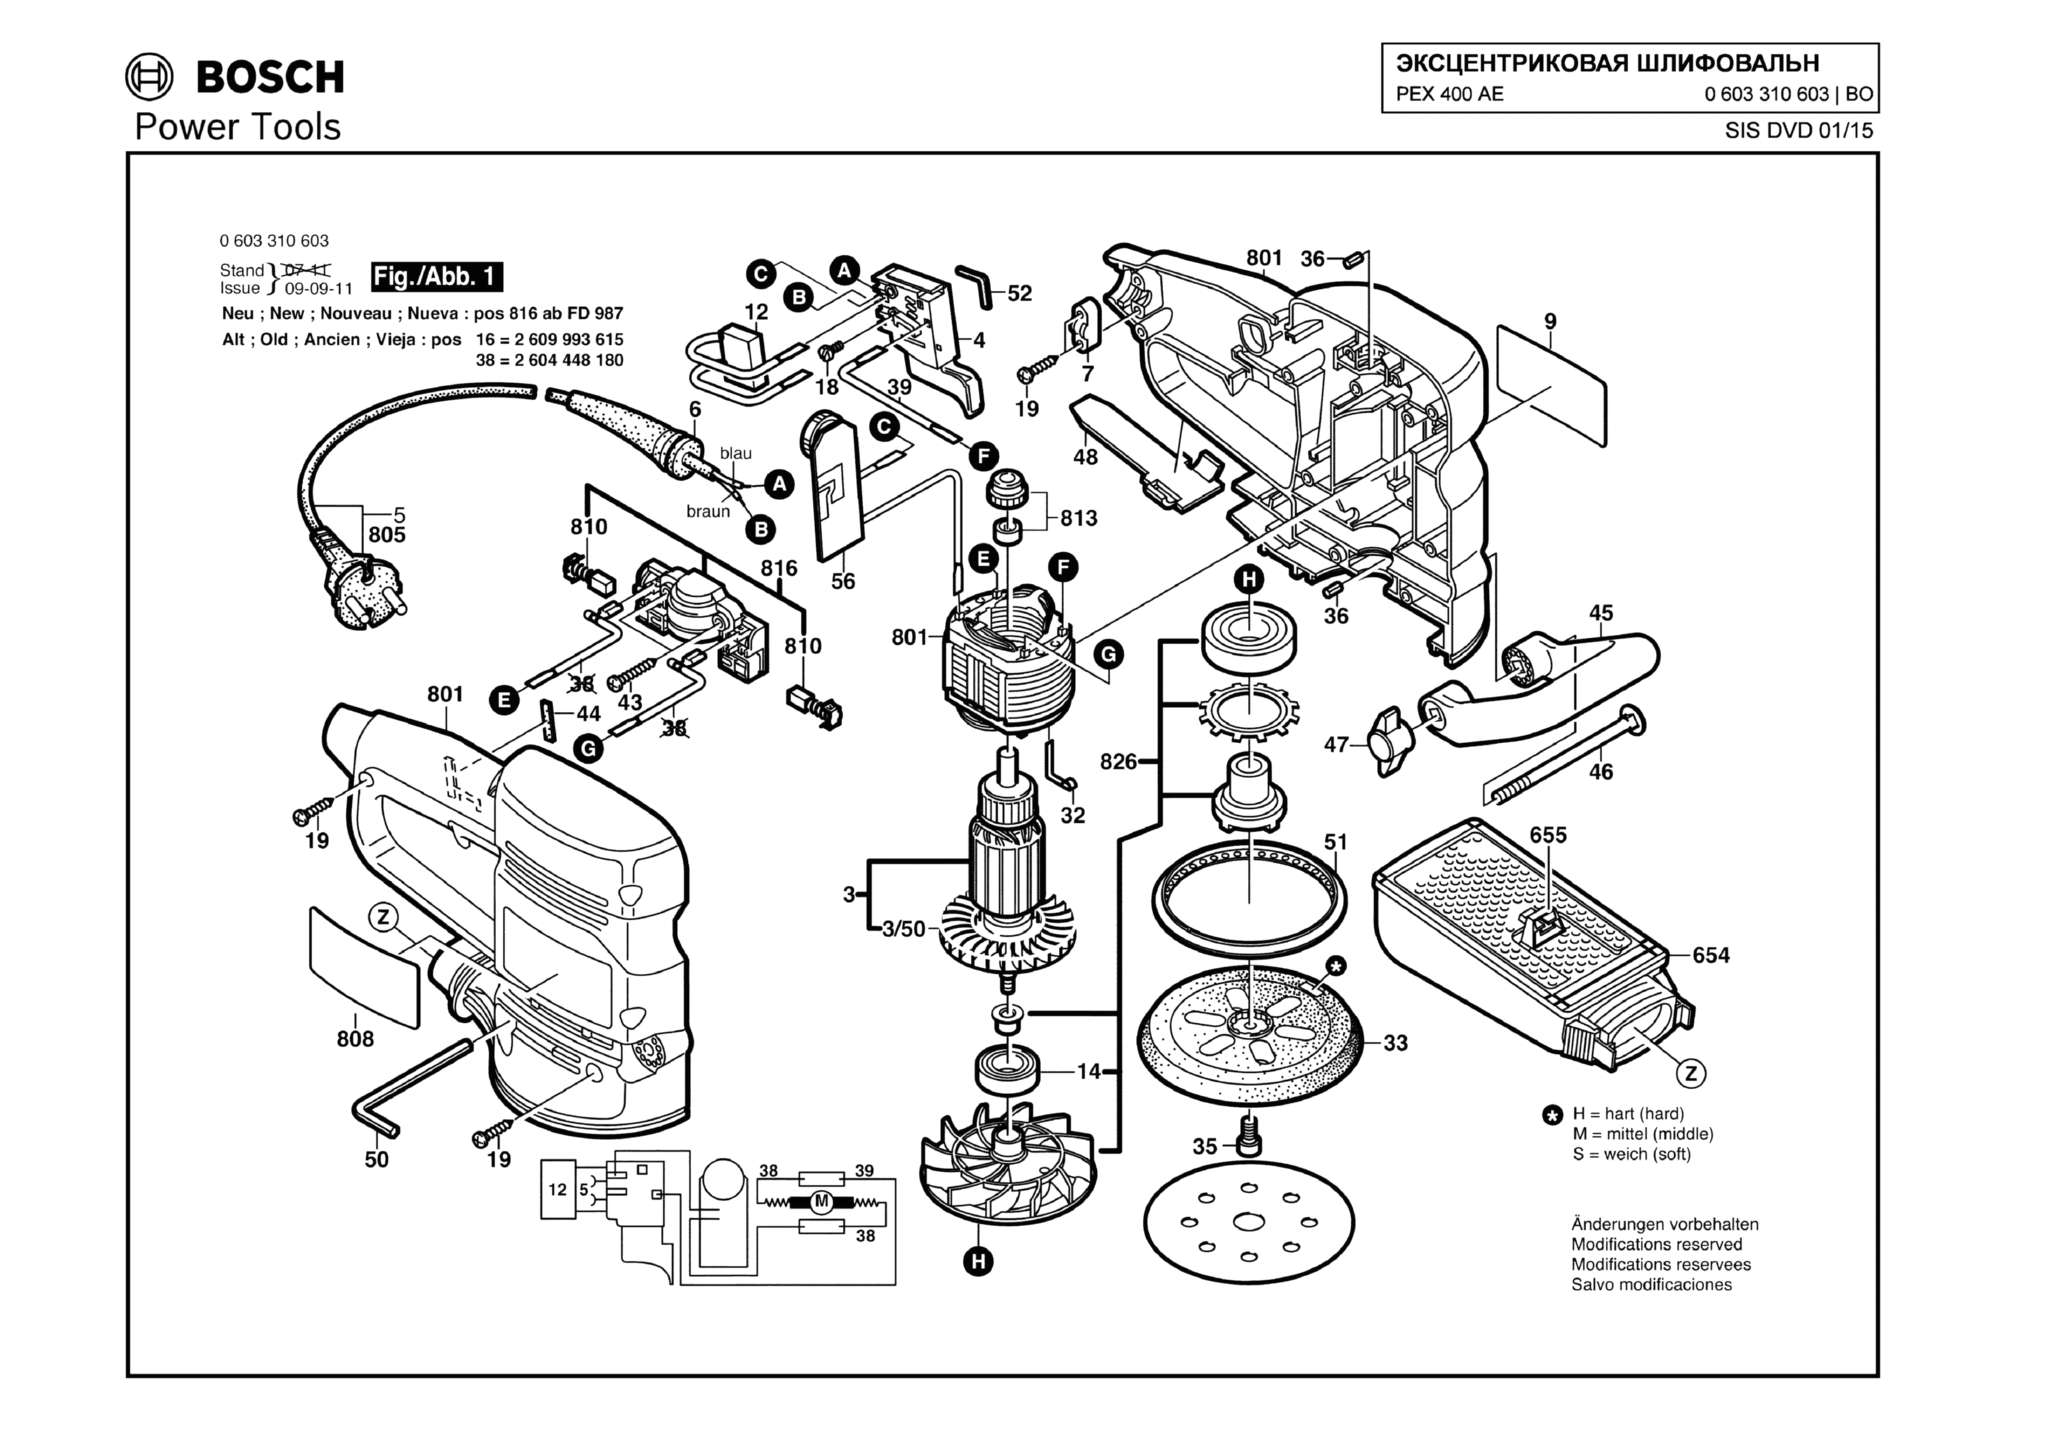 Запчасти, схема и деталировка Bosch PEX 400 AE (ТИП 0603310603)